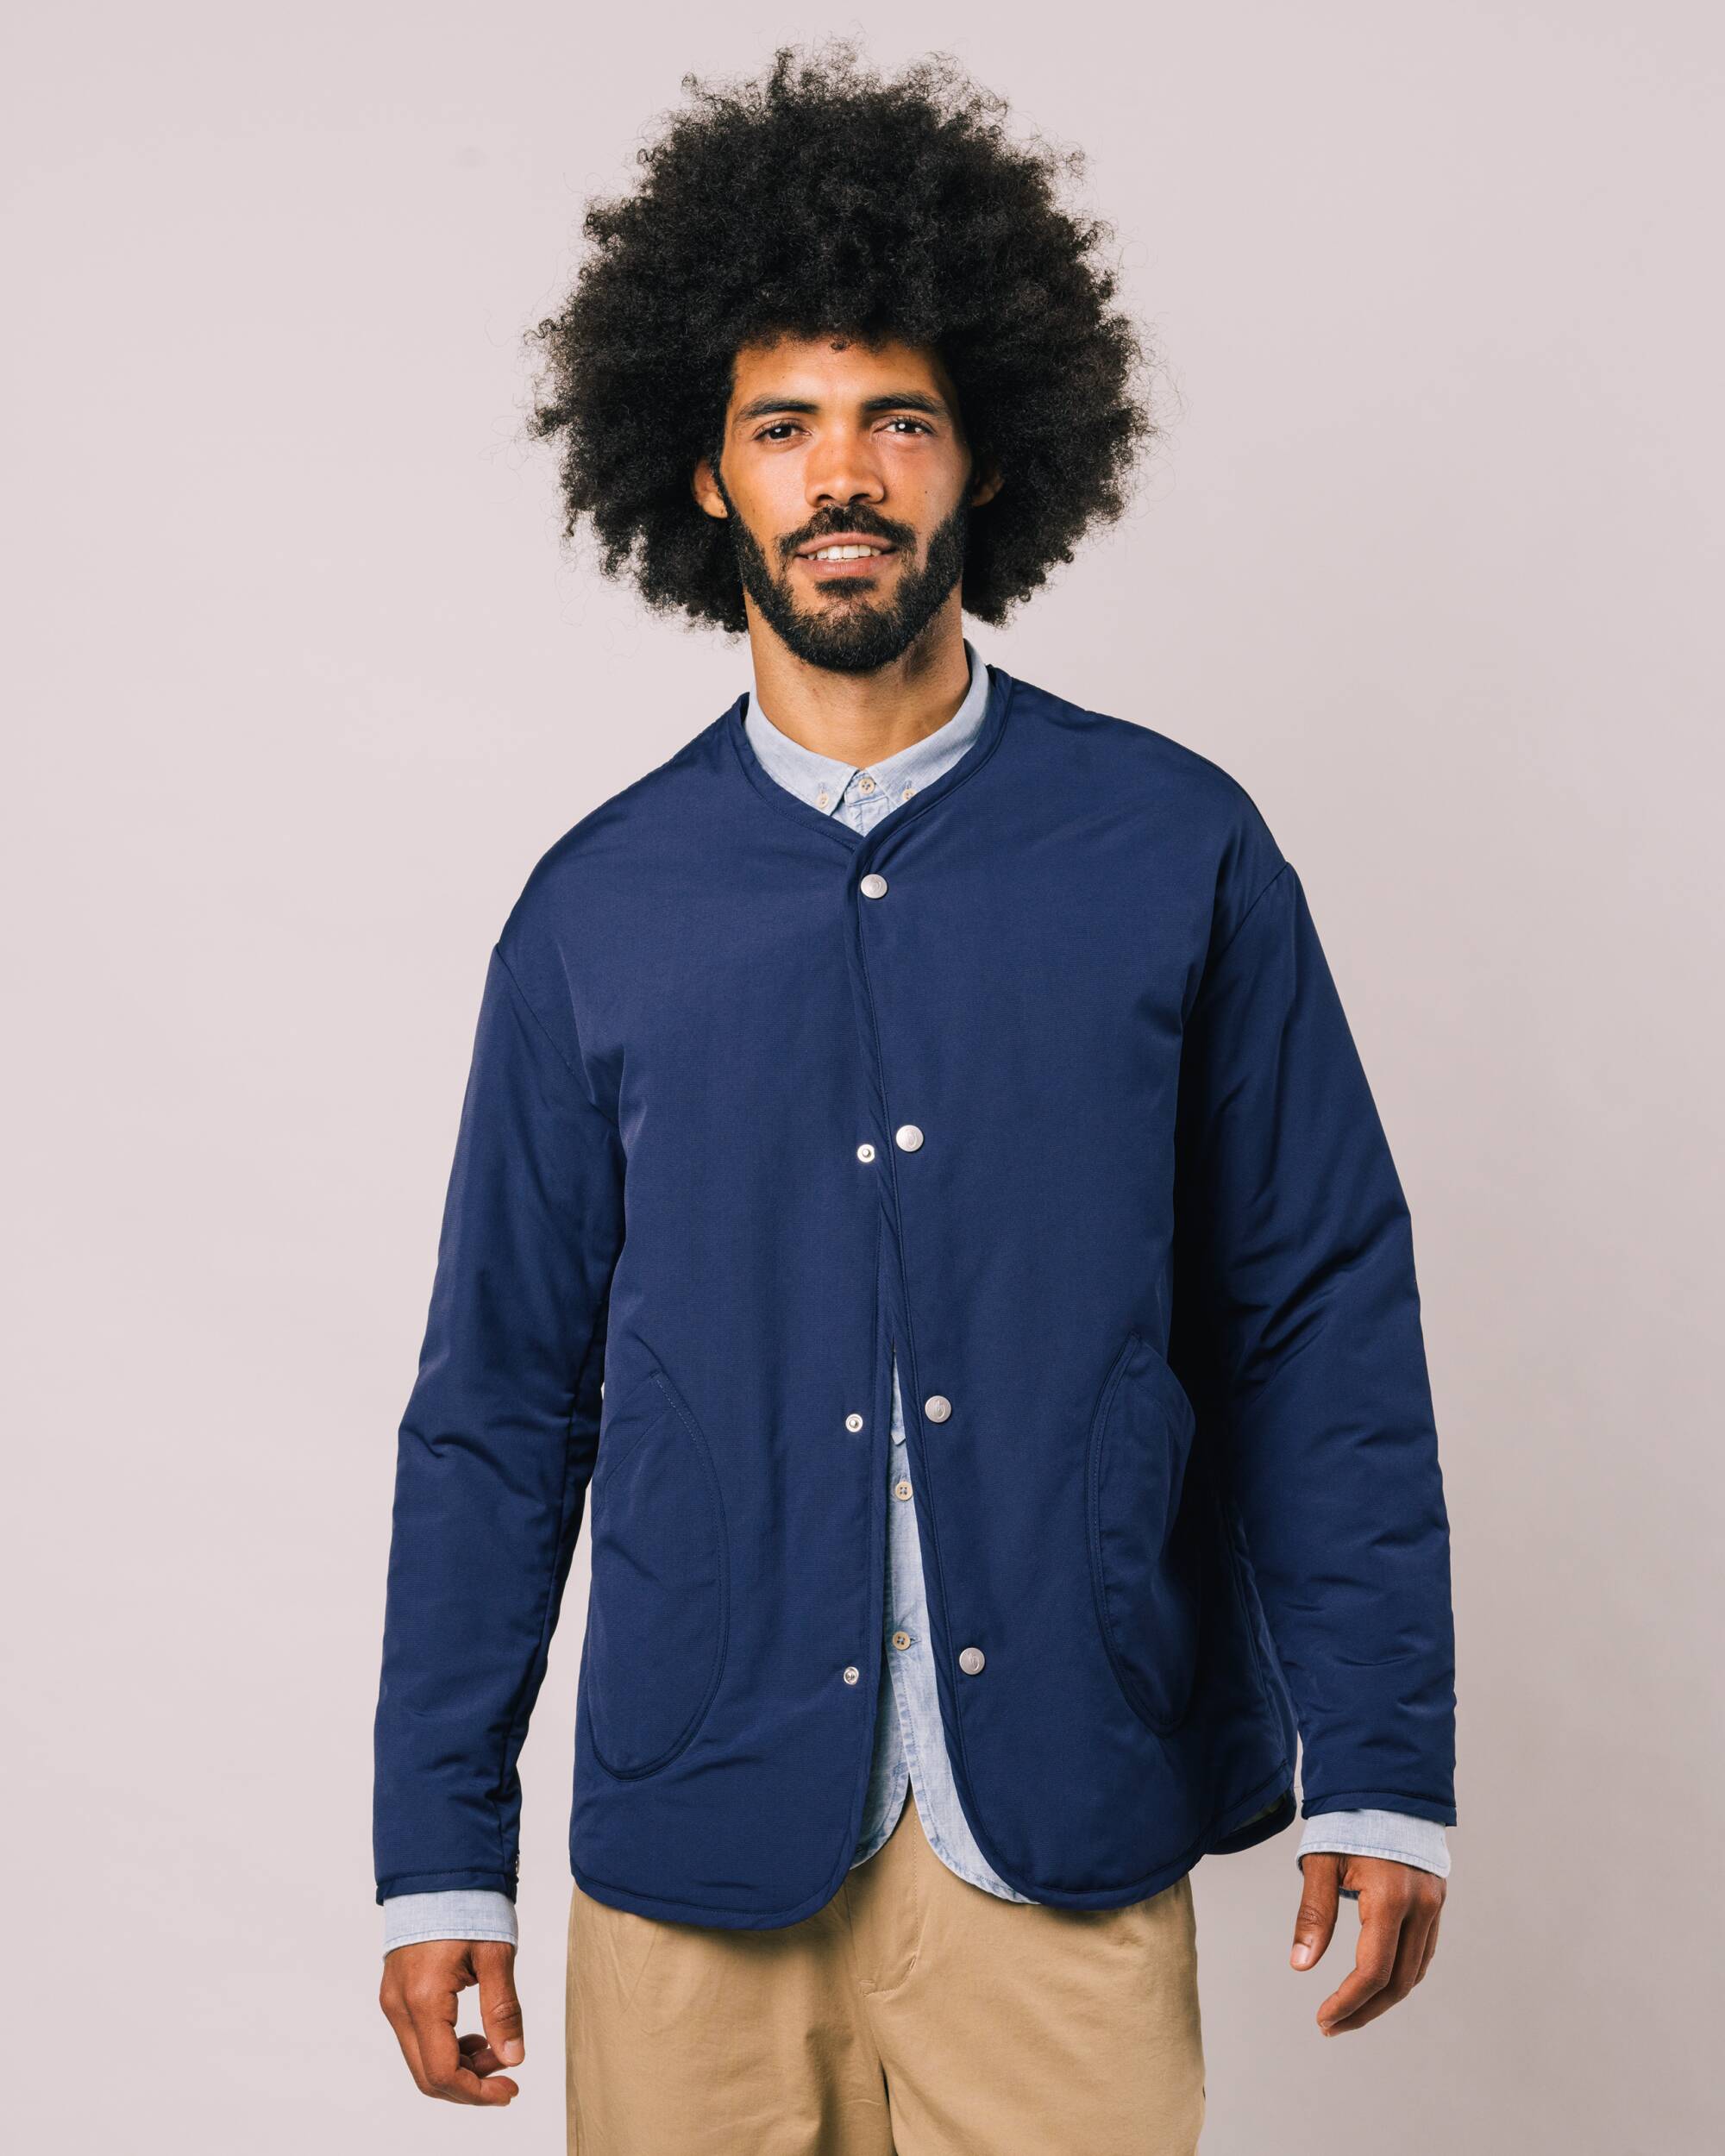 Veste oversize matelassée bleu foncé en polyester recyclé de Brava Fabrics